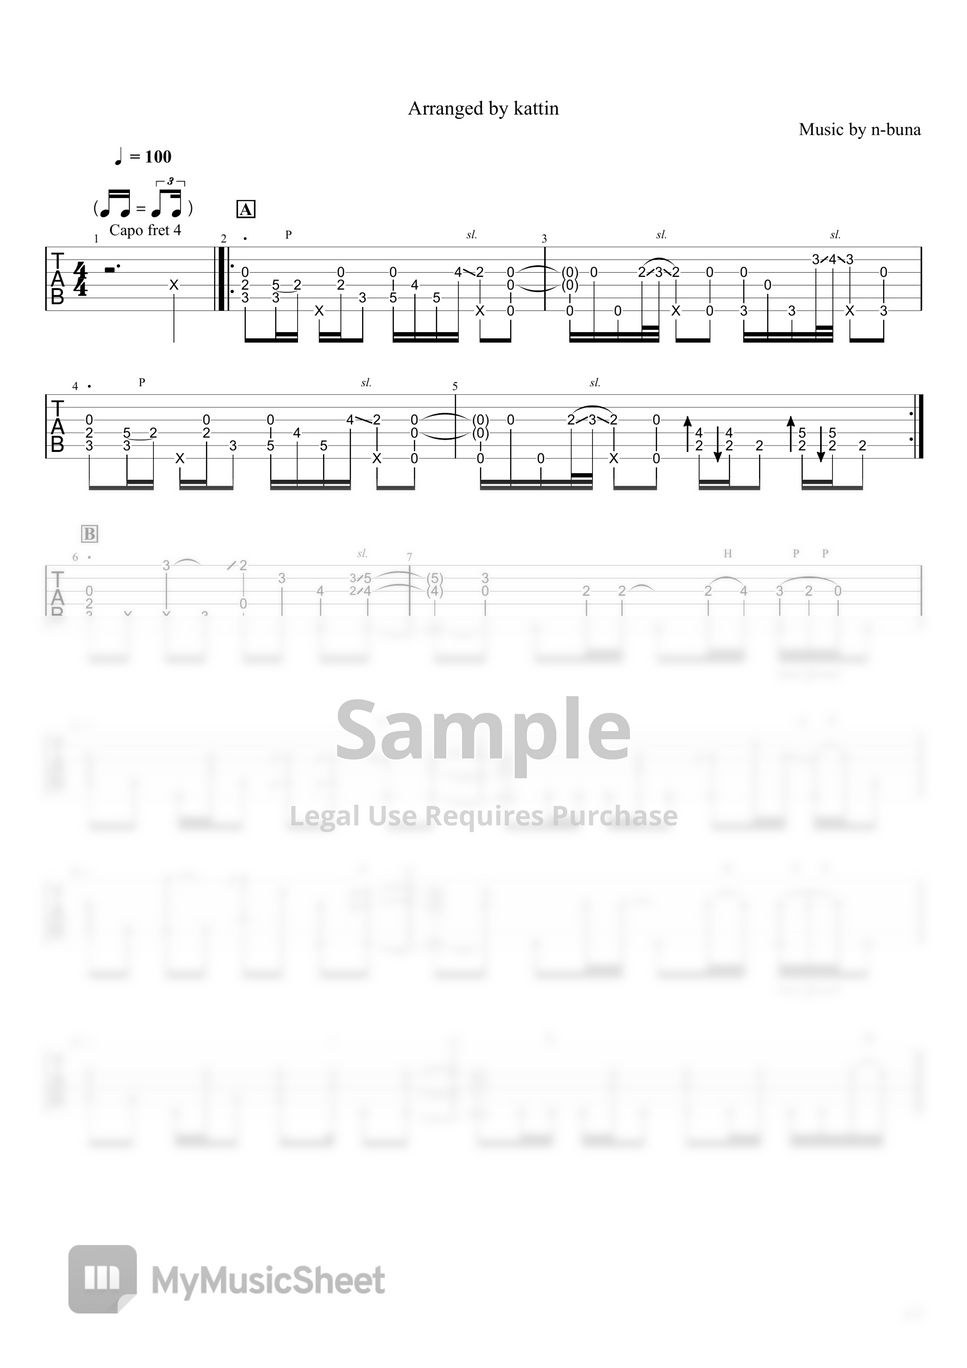 ヨルシカ - 雨とカプチーノ (ソロギター、fingerstyle、) by kattin025